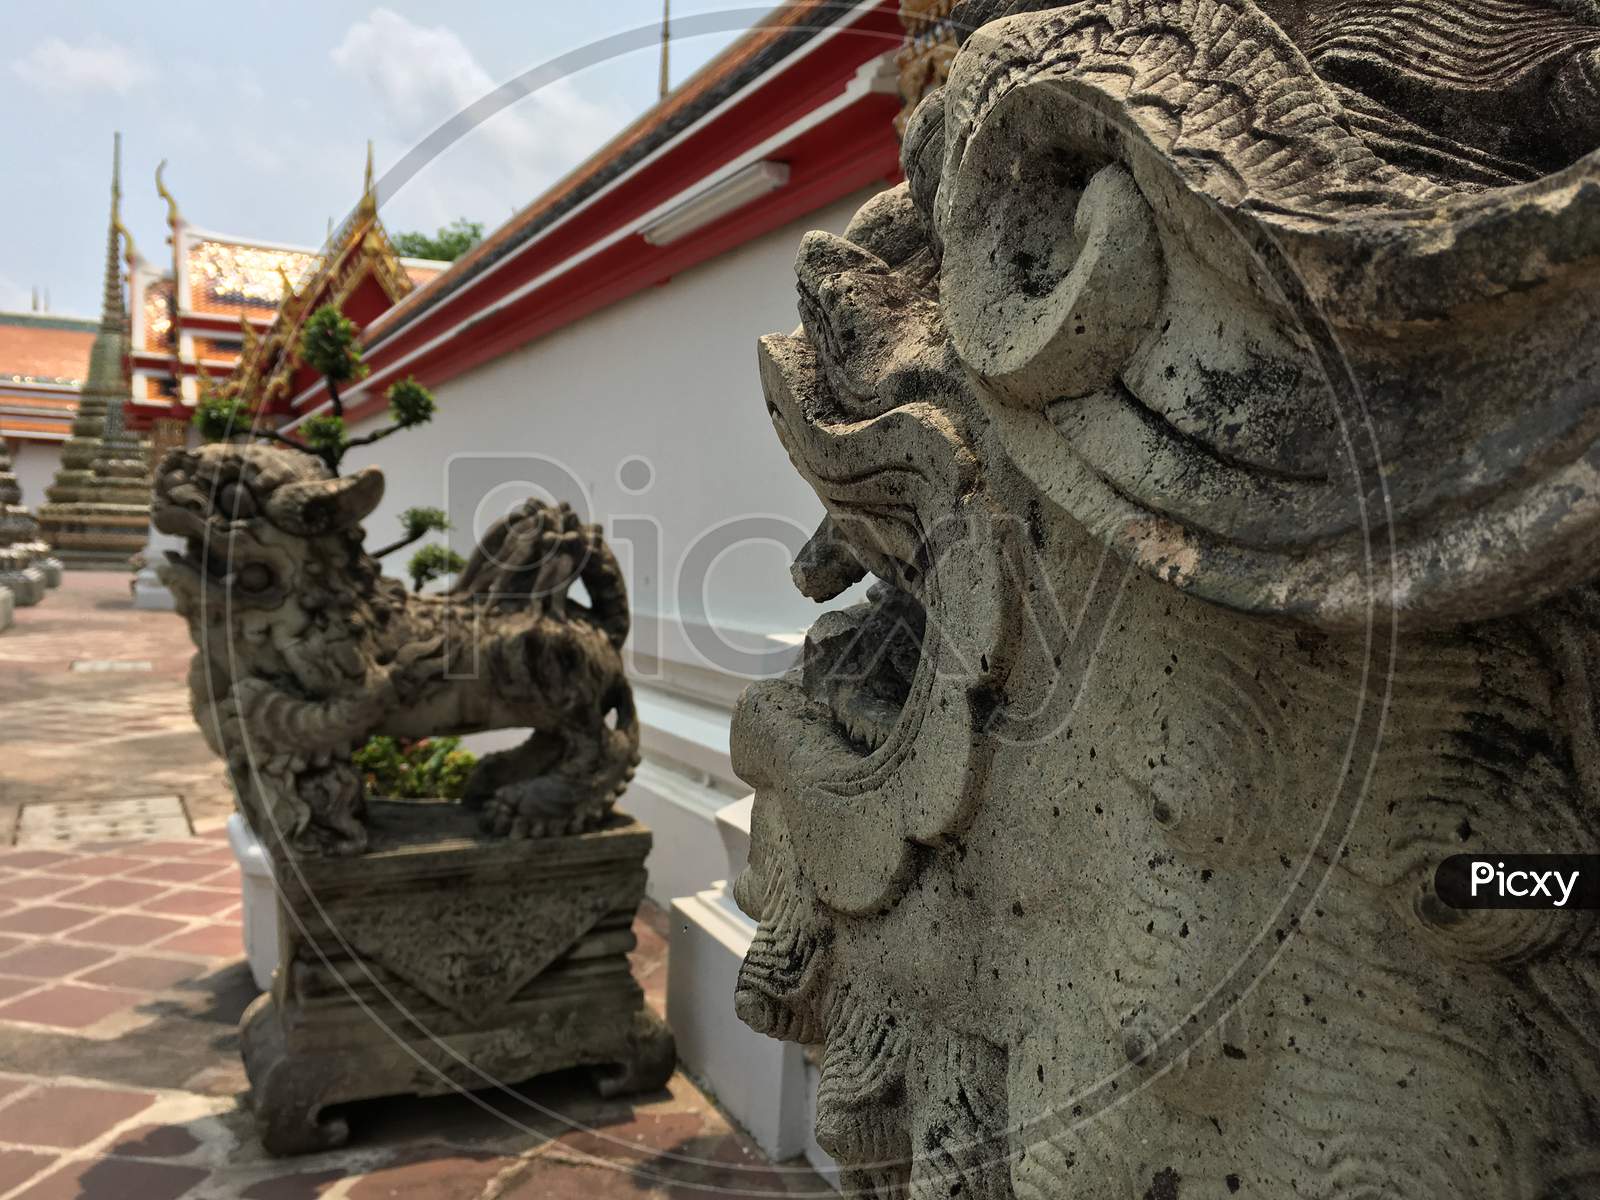 A front view of the Wat Traimit Withayaram Worawihan, Bangkok, Thailand